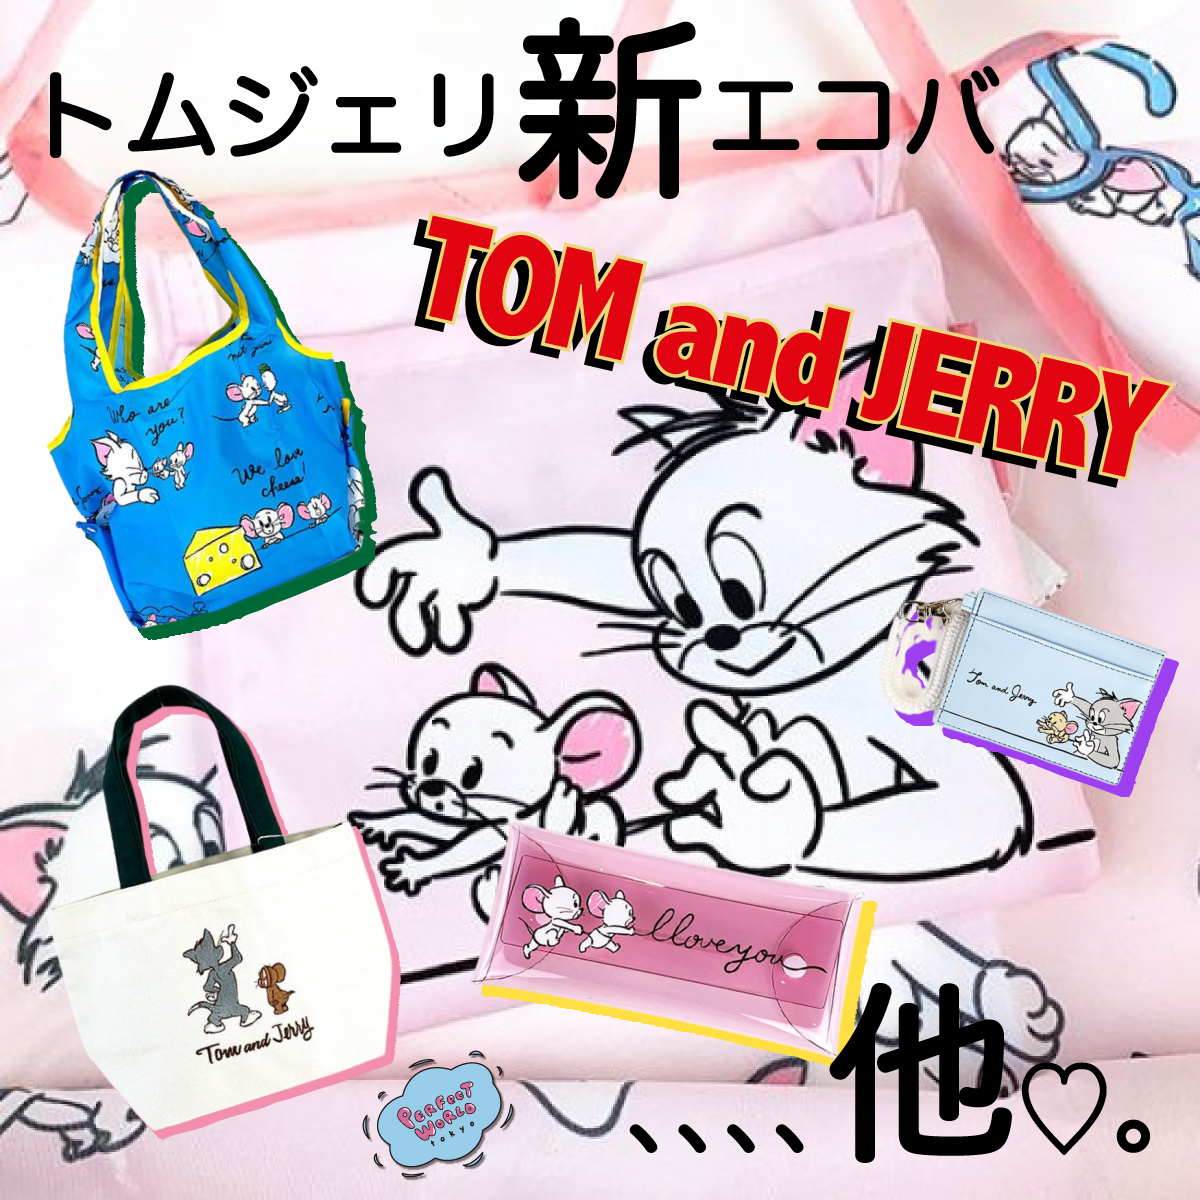 お誕生日おめでとうトムとジェリー 手描き風タッチがクセになる 人気のタフィーも登場のトムとジェリーの新作エコバッグ パスケース Perfect World Tokyo